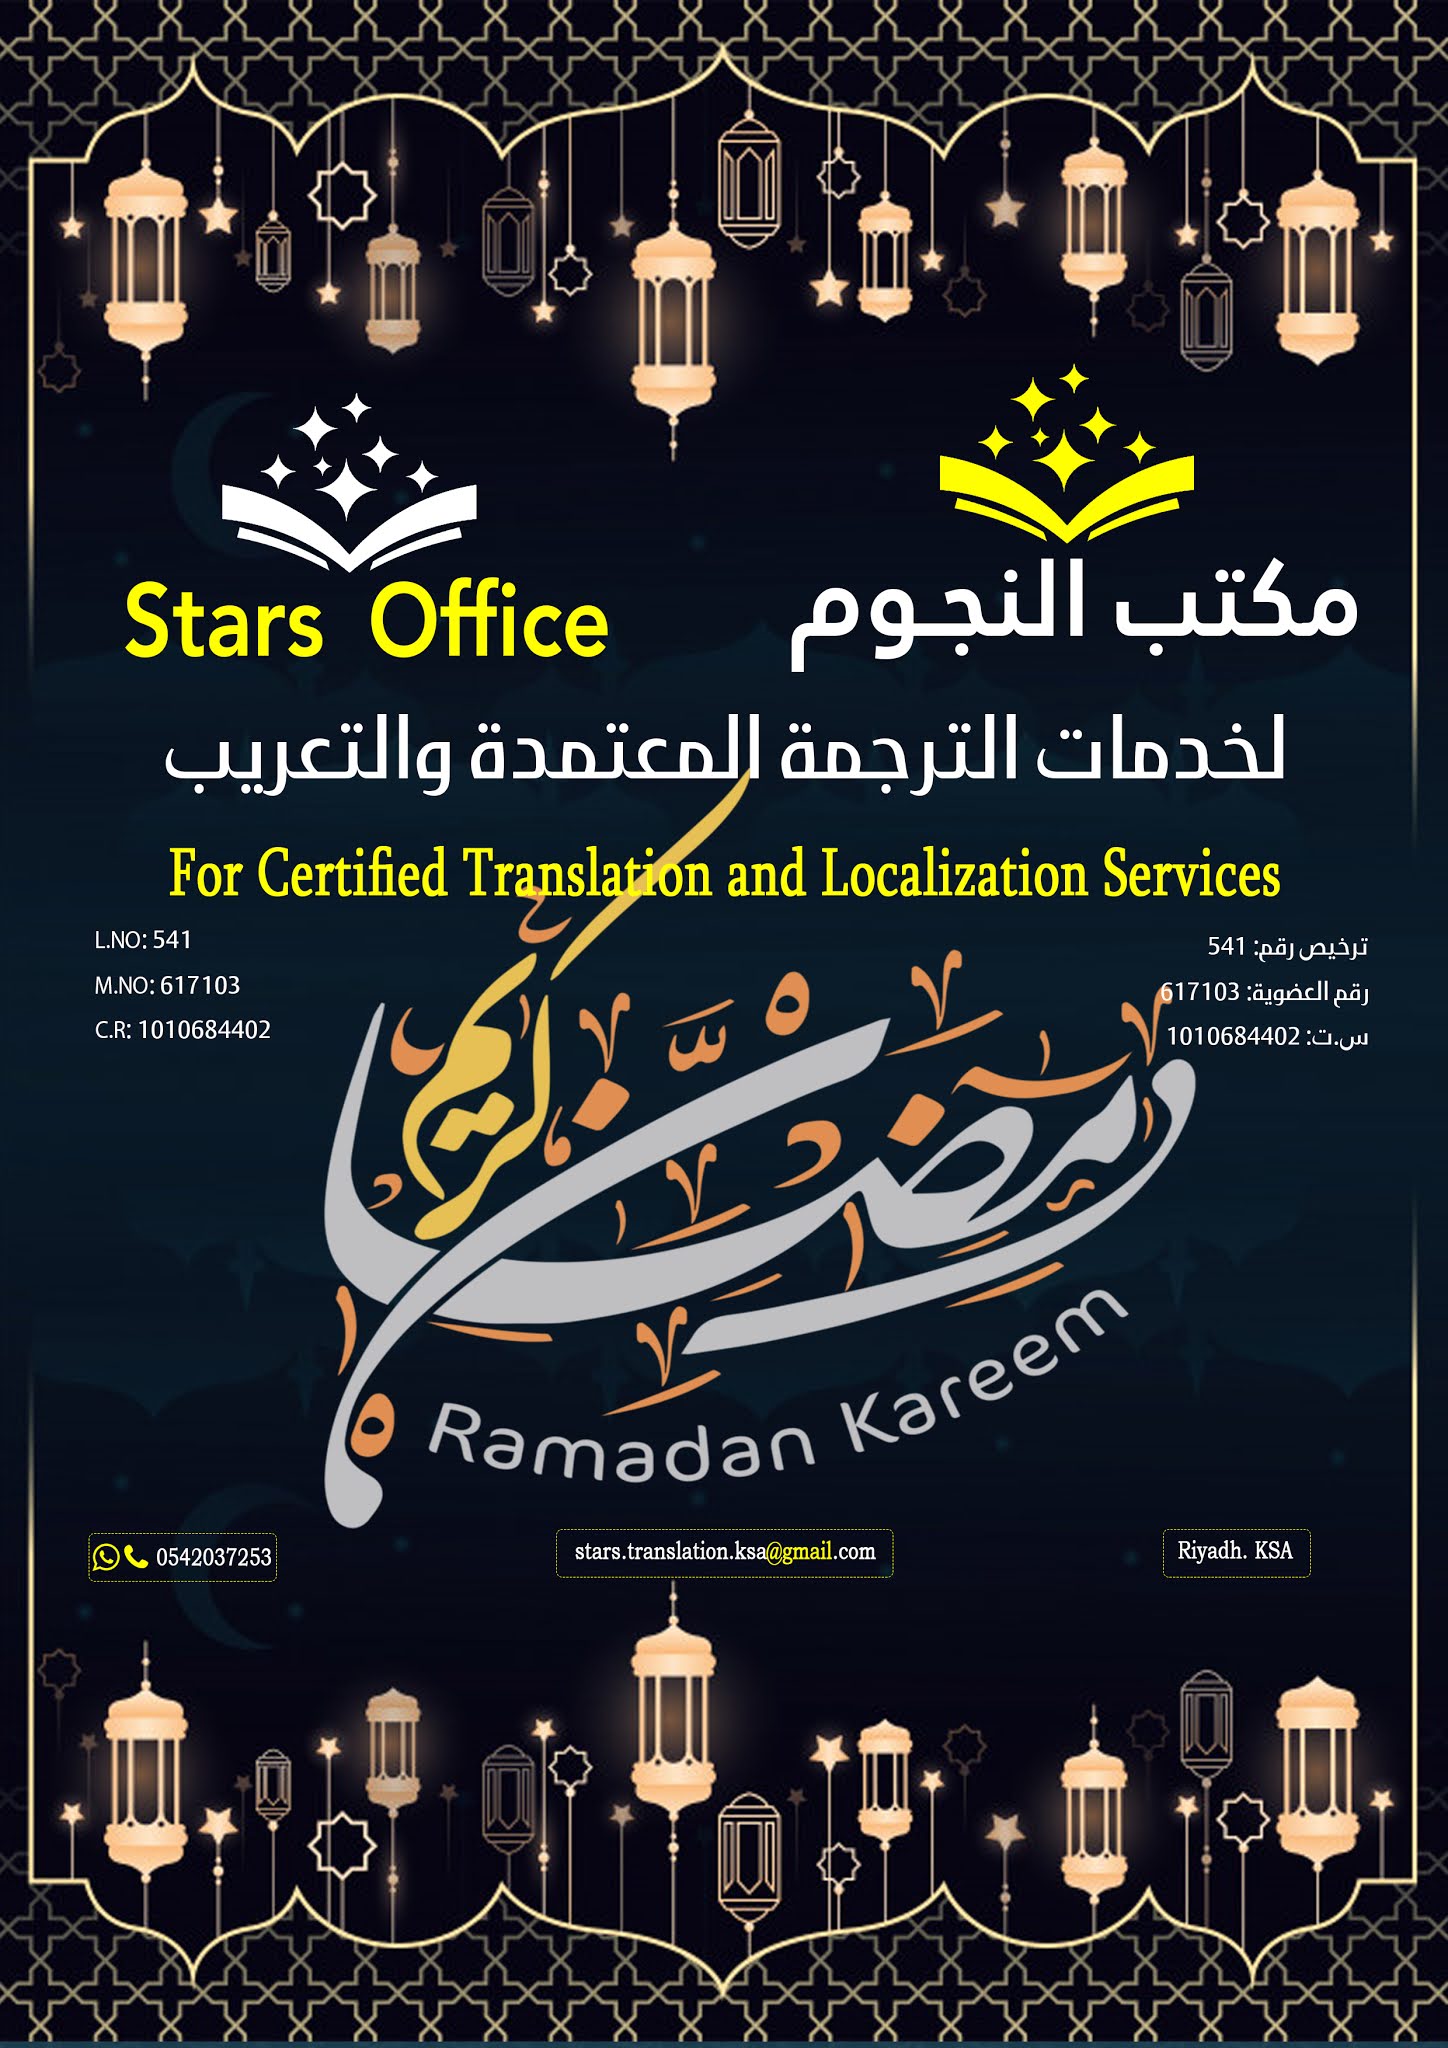 بوسترات تهنئة لشهر رمضان Ramadan Kareem للمكاتب خاصة والأعمال التجارية